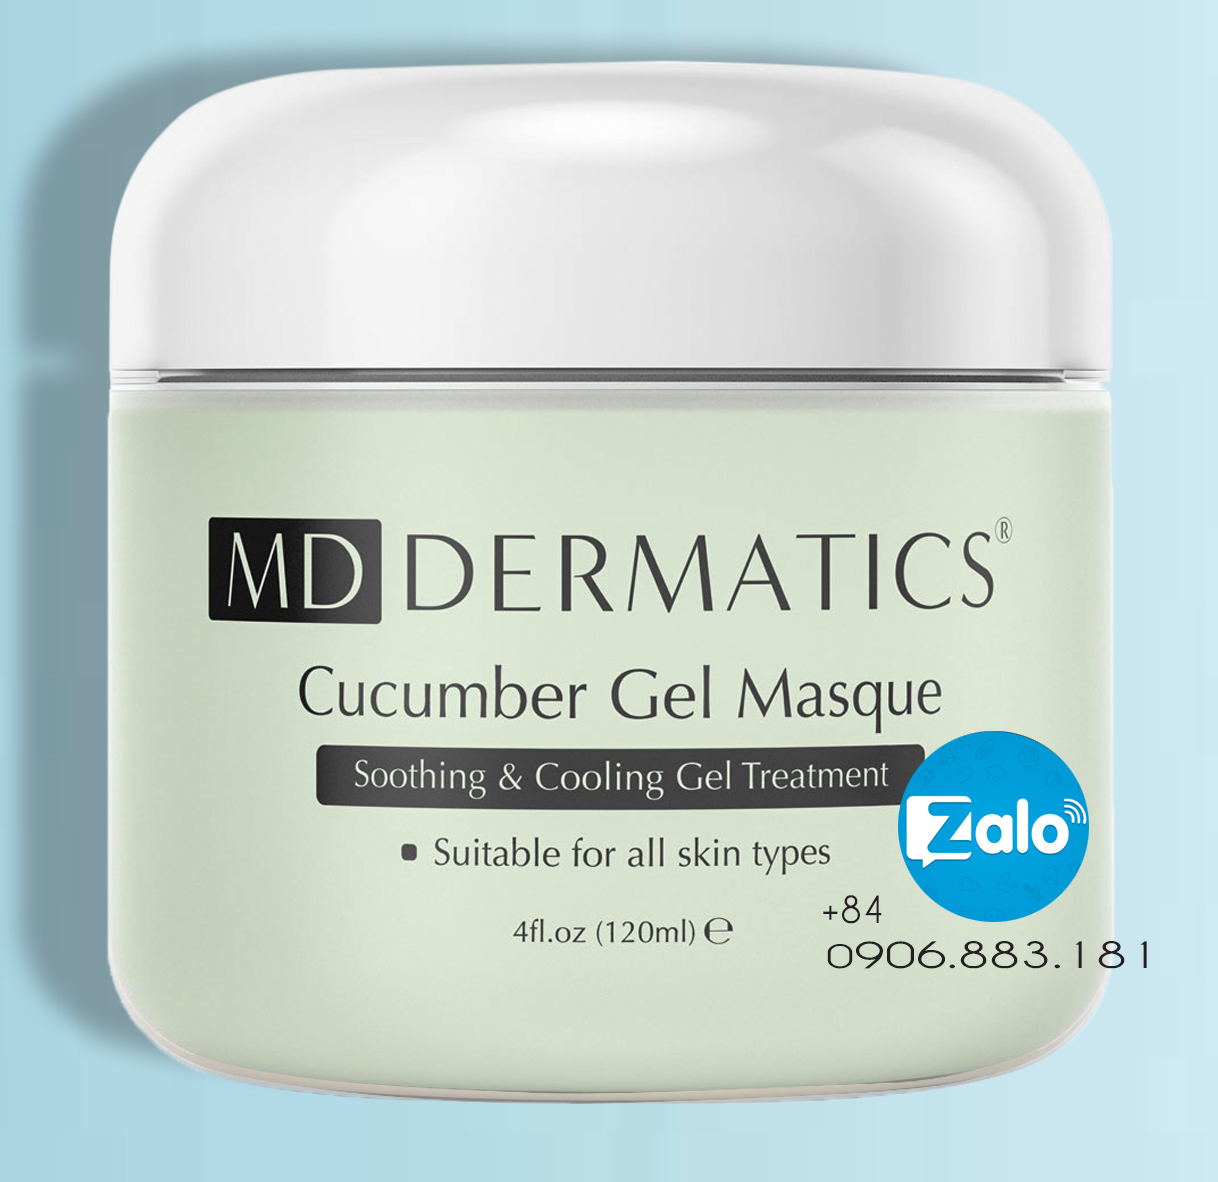 MD Dermatics Cucumber Gel Masque Mặt nạ làm mềm da